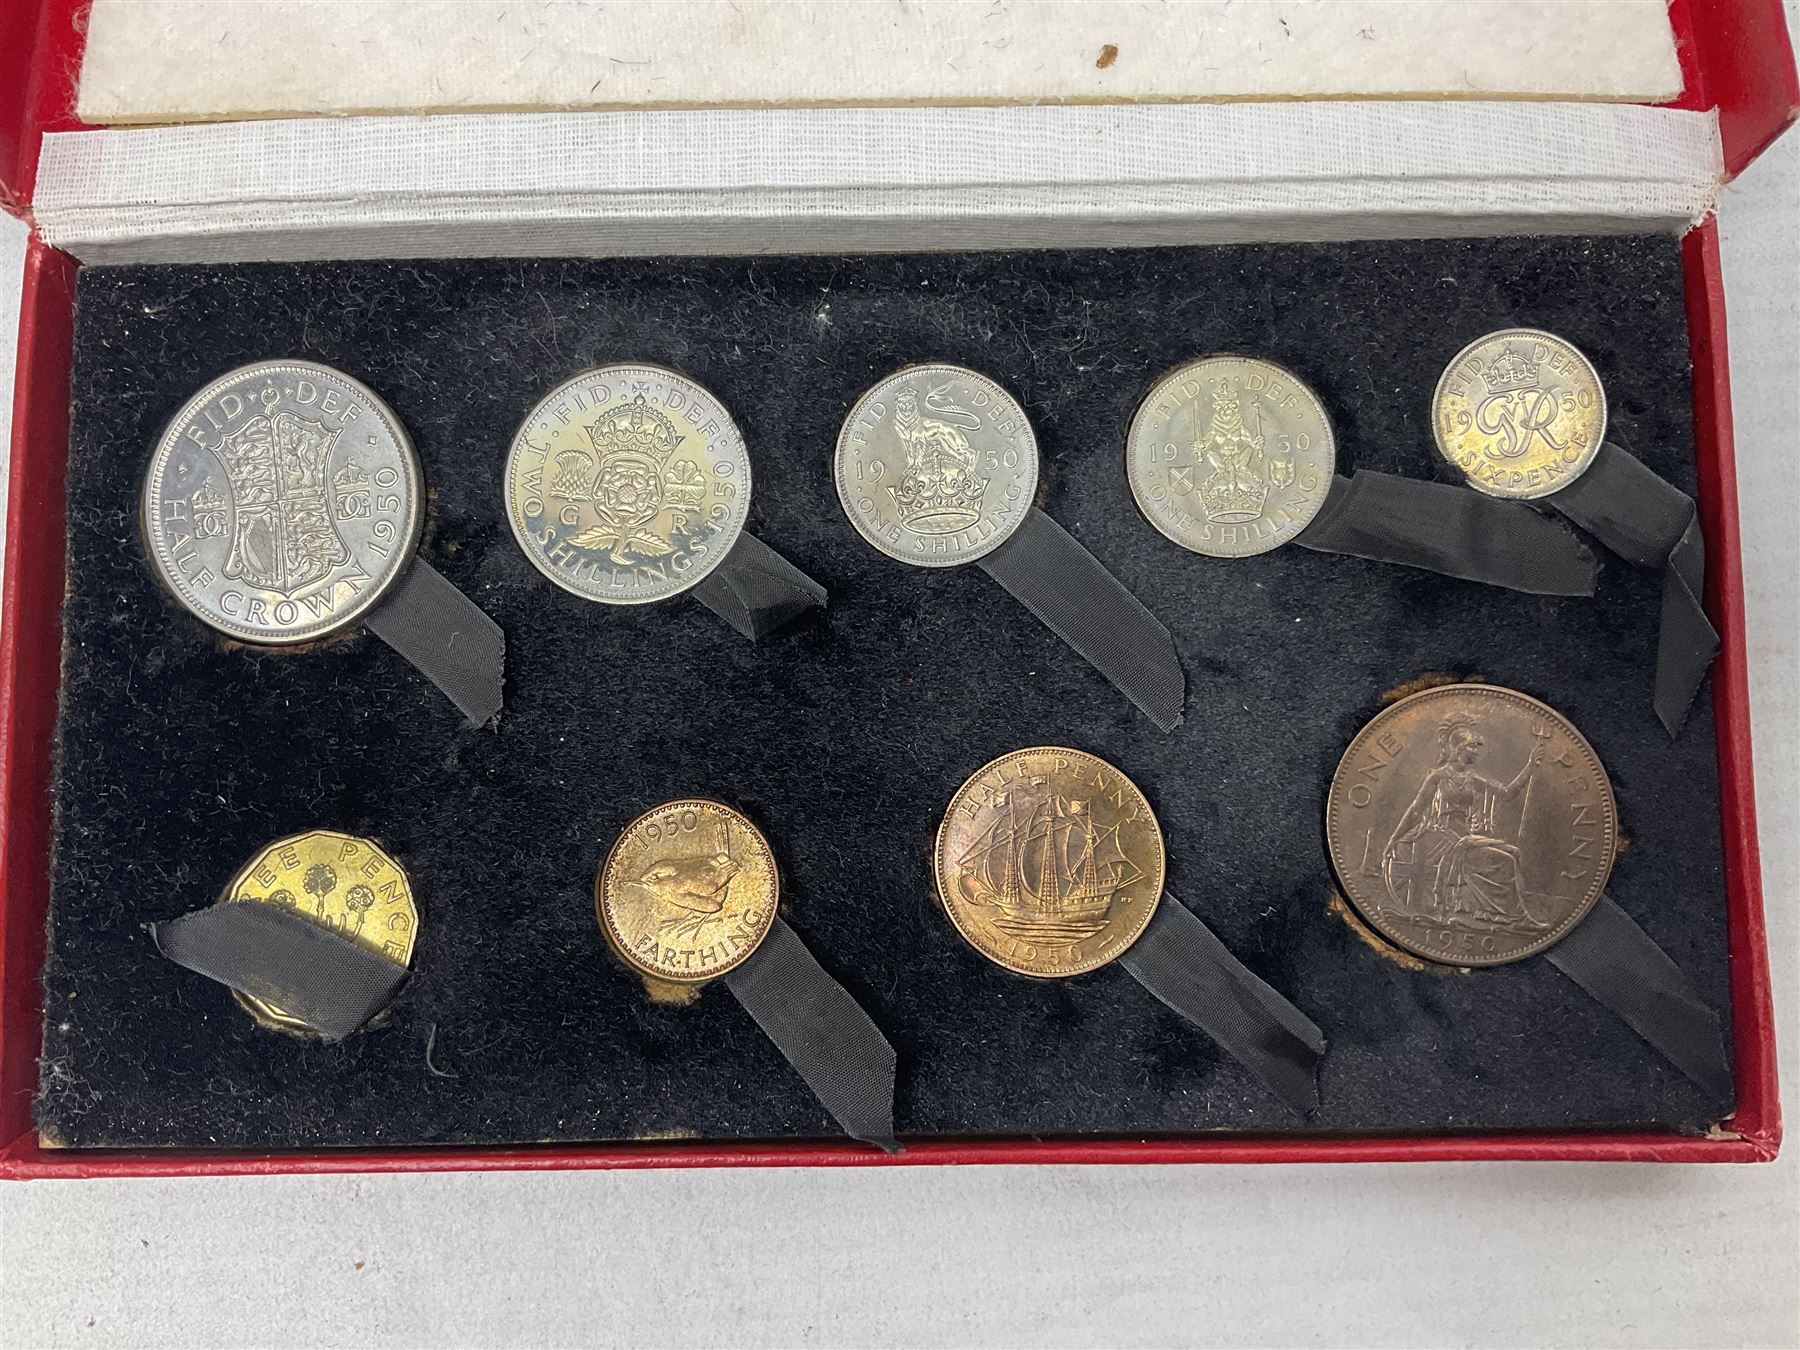 King George VI 1950 nine coin set - Image 6 of 6